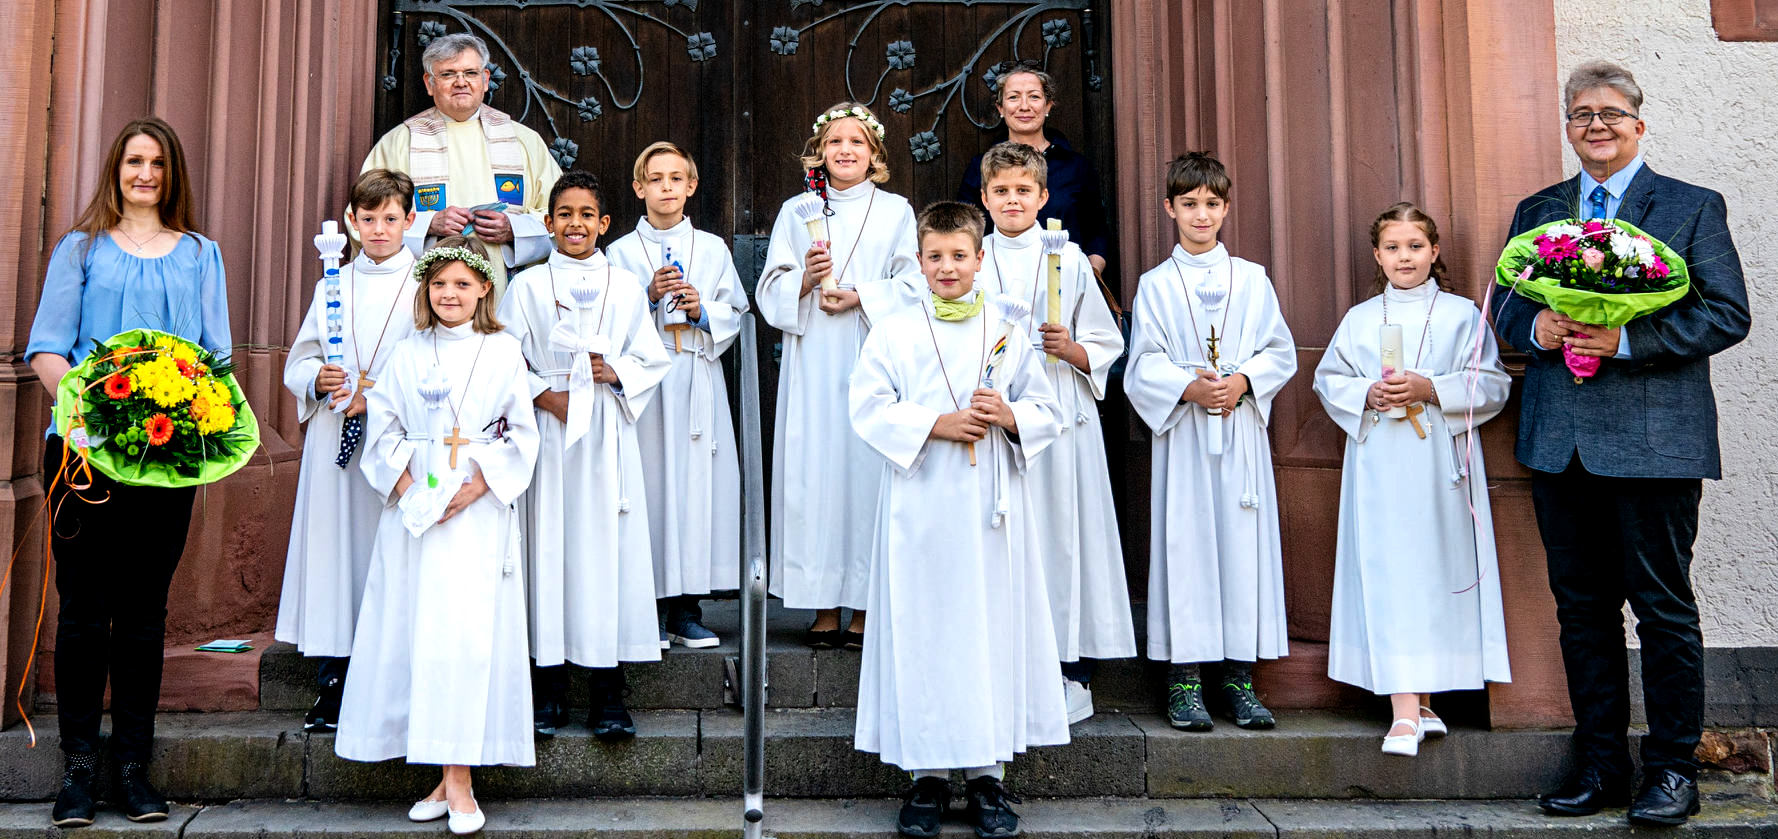 Dritte Gruppe nach Empfang der Hl. Kommunion Im festlichen Gewand vor dem Kirchenportal (c) Foto Stöber